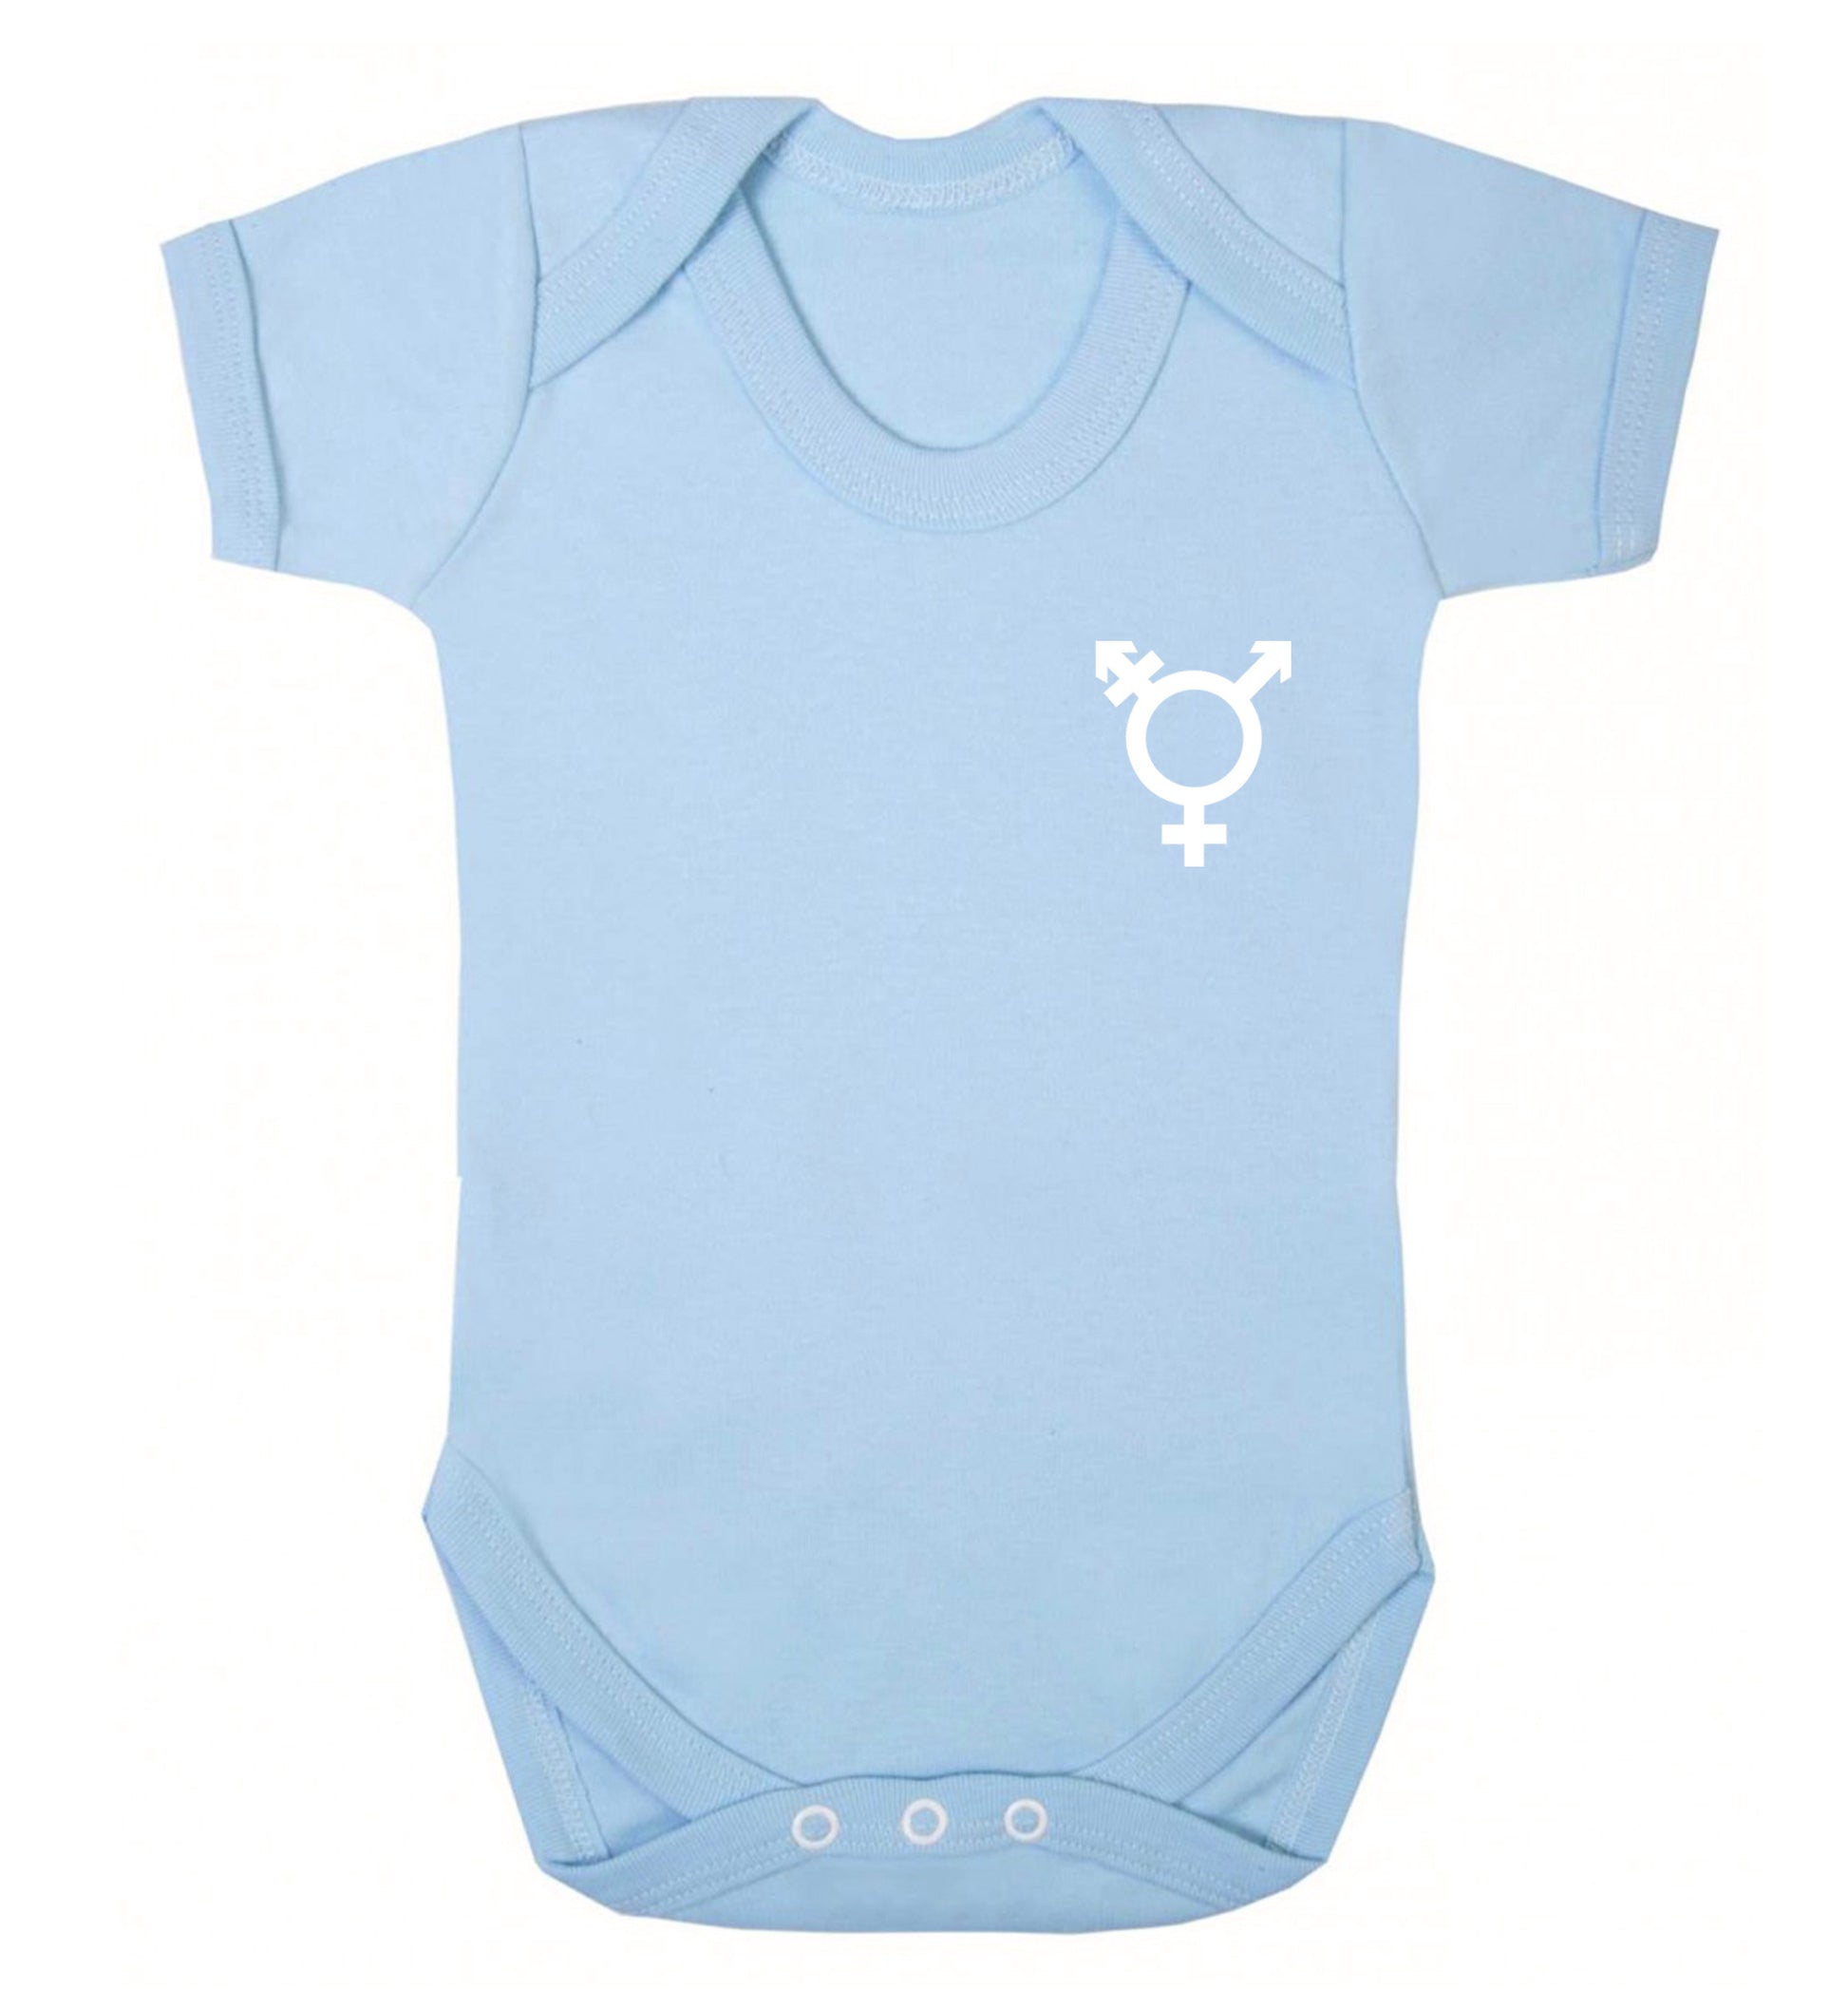 Trans gender symbol pocket Baby Vest pale blue 18-24 months